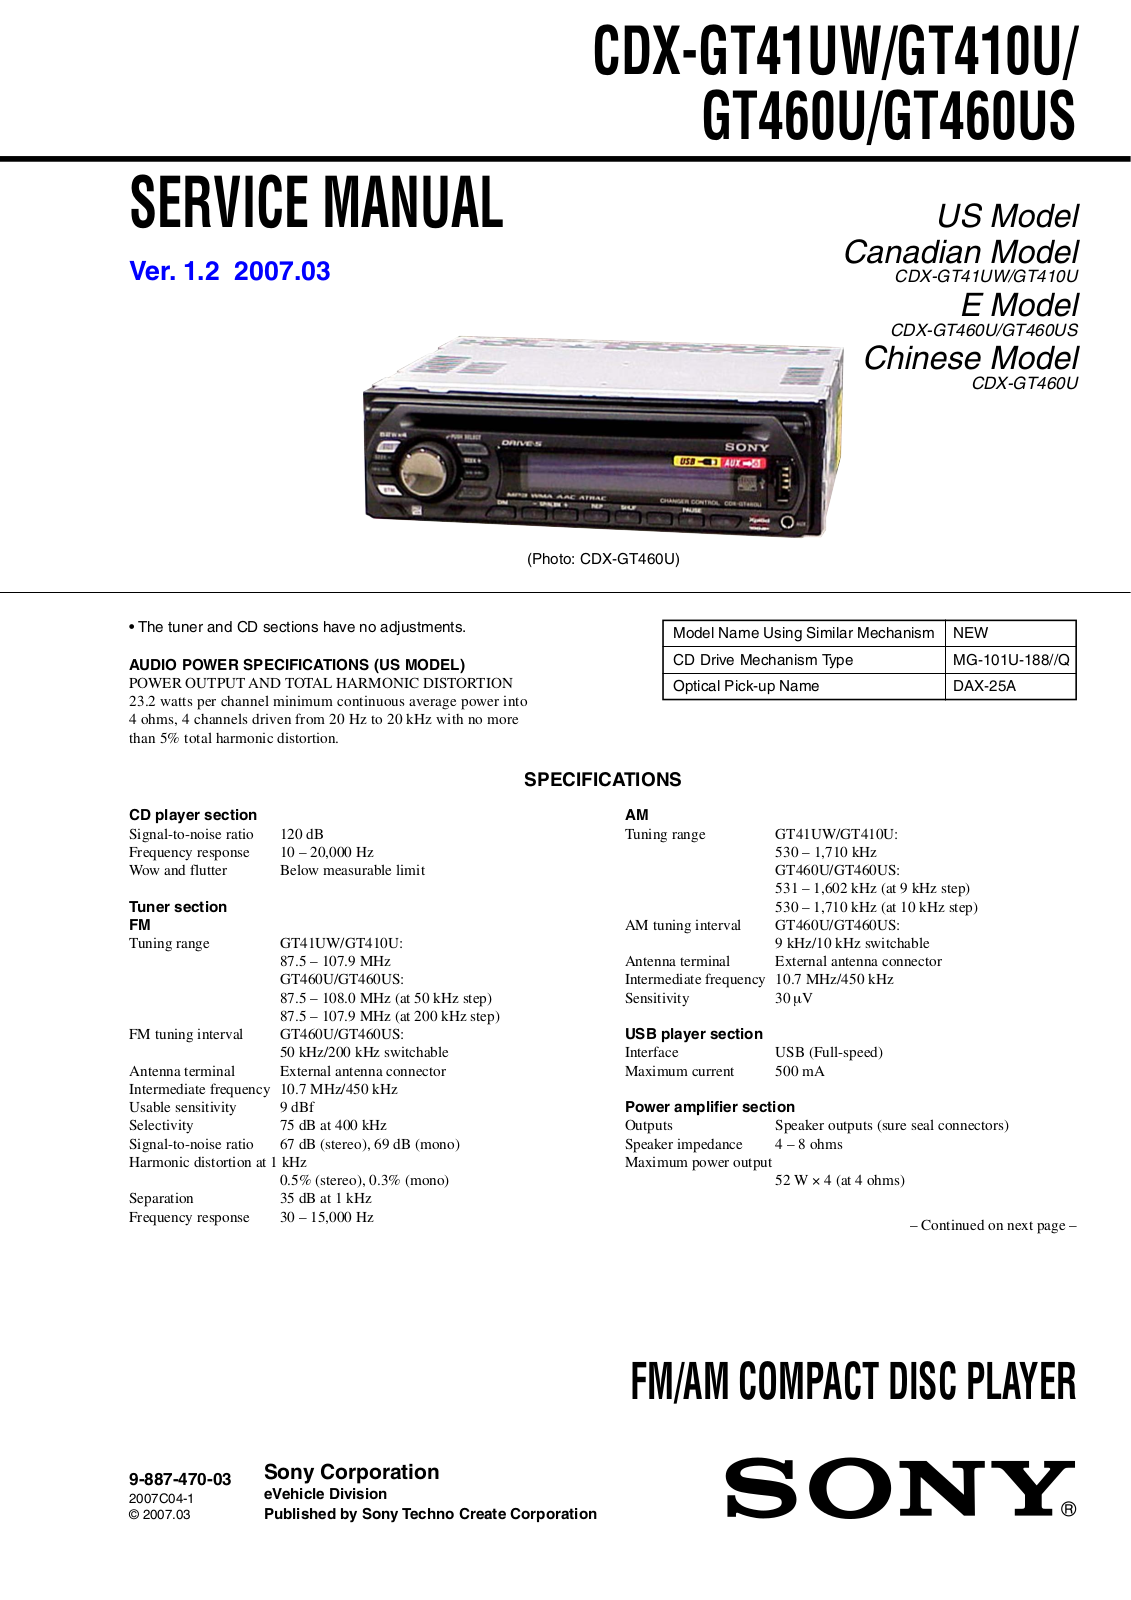 Sony CDX-GT410, CDX-GT460 Schematic